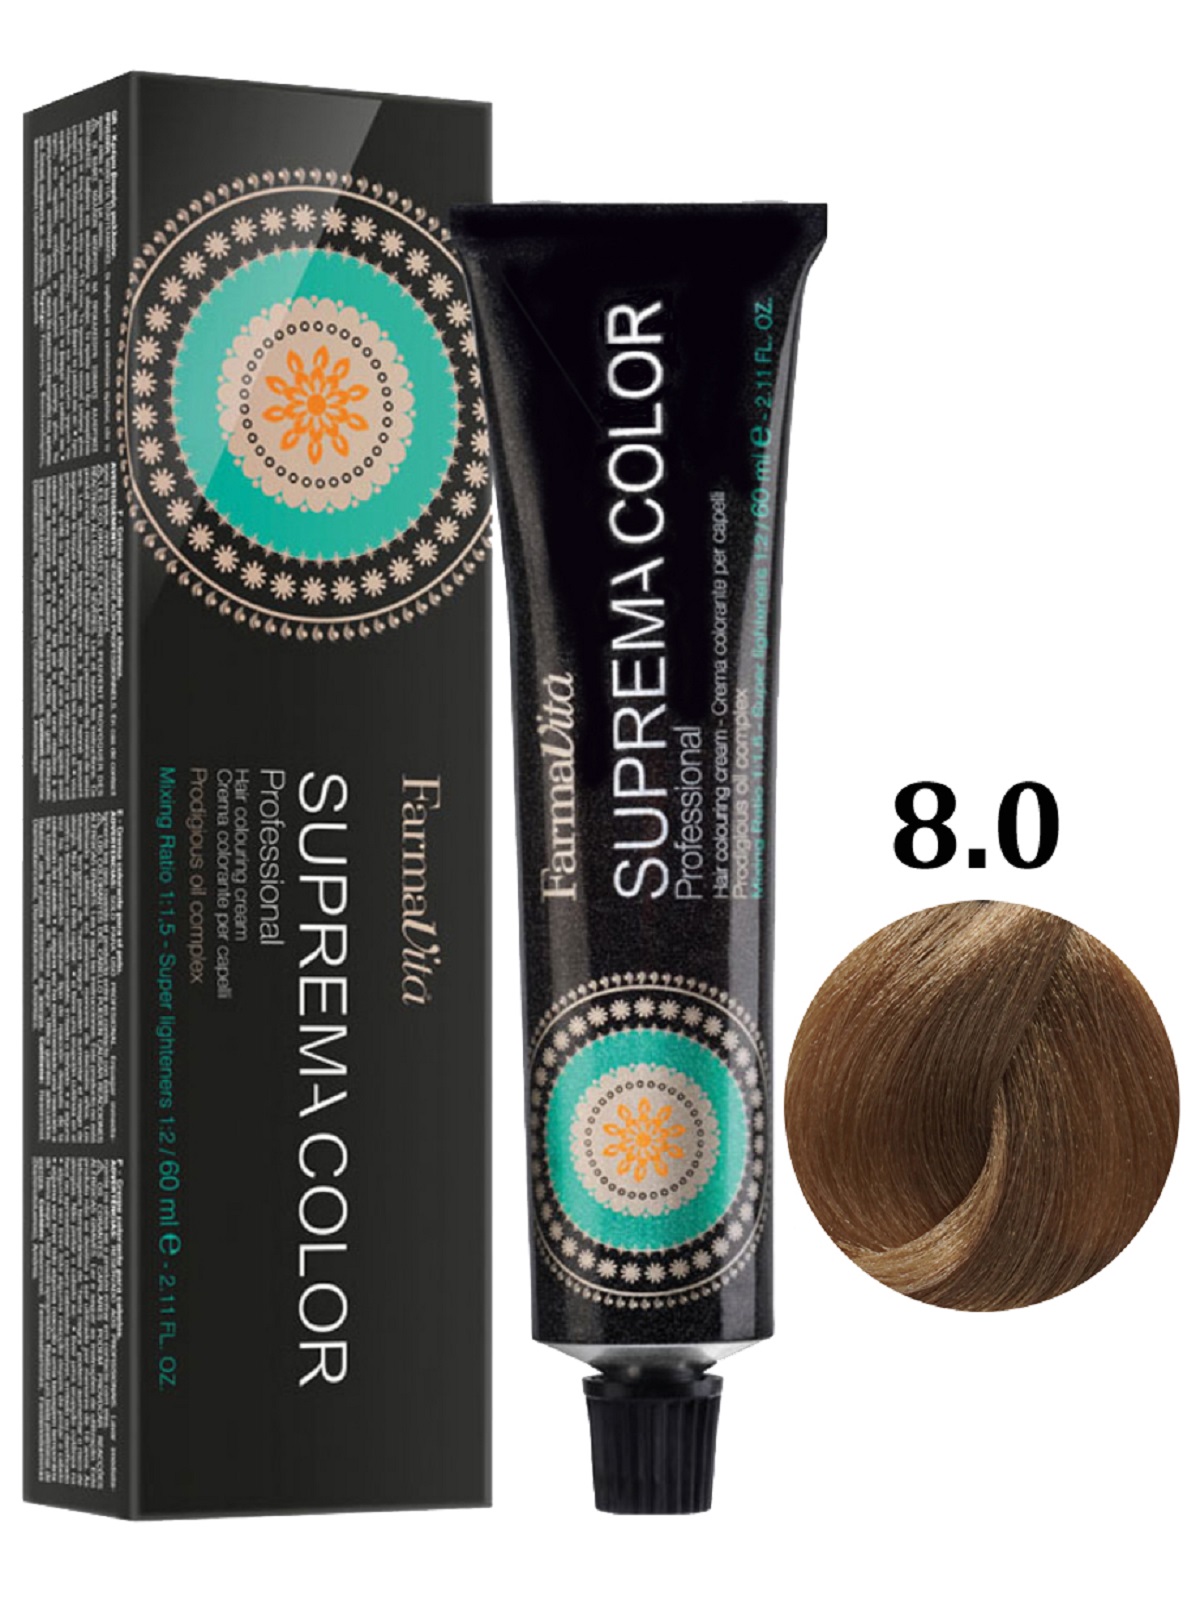 Крем-краска FARMAVITA SUPREMA COLOR для окрашивания волос 8.0 светлый блондин 60 мл крем краска для волос farmavita suprema color 6 77 интенсивный коричневый кашемир 60 мл